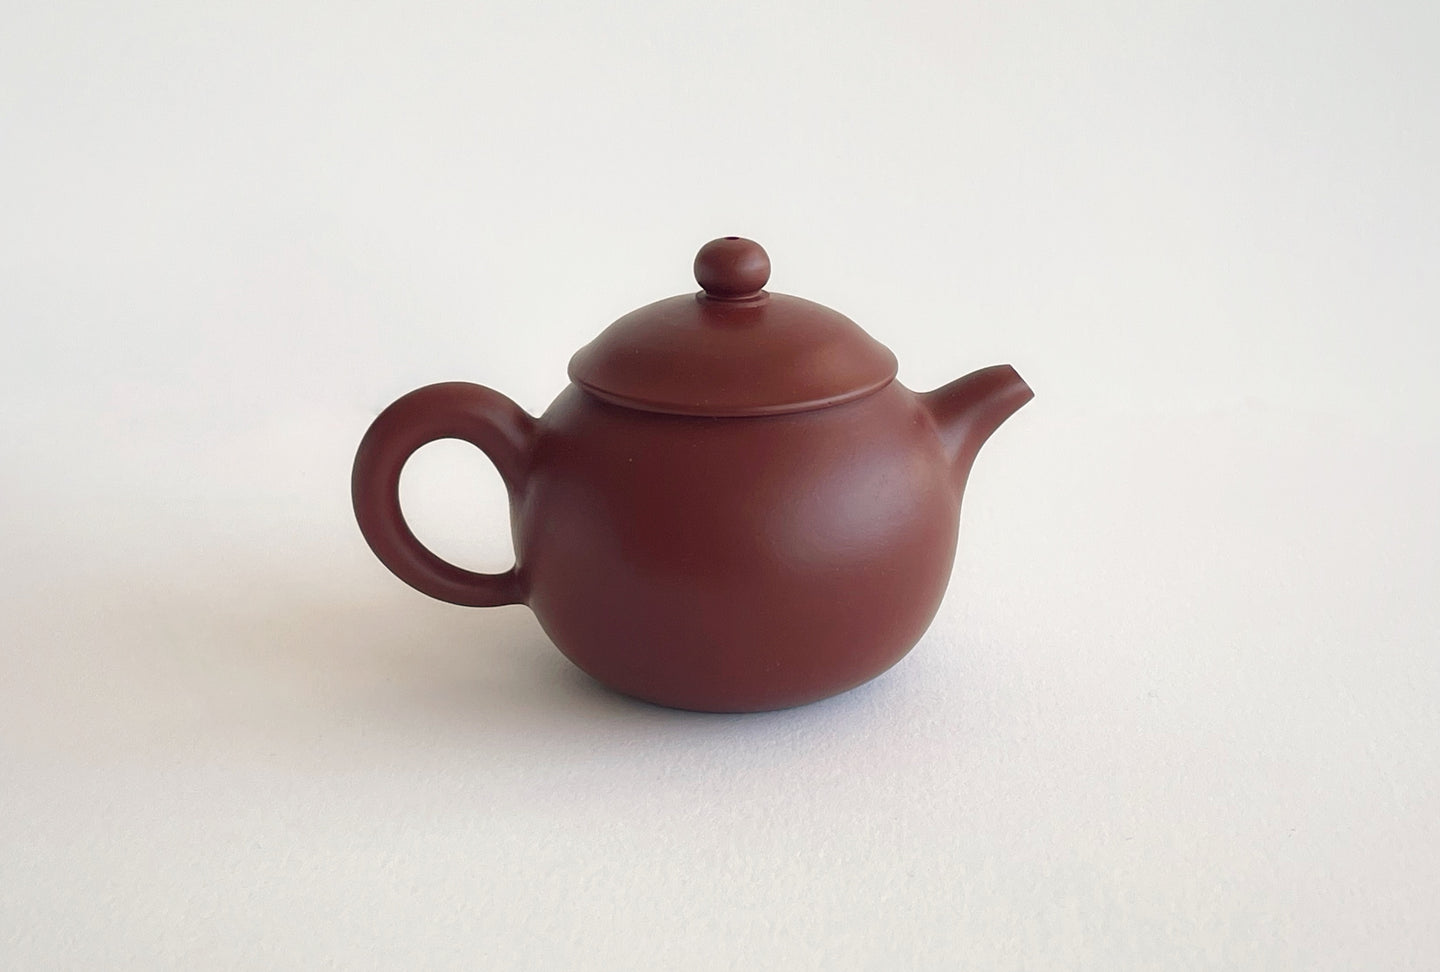 Fu Gu Da Hong Pao teapot by Master Lin 复古壶